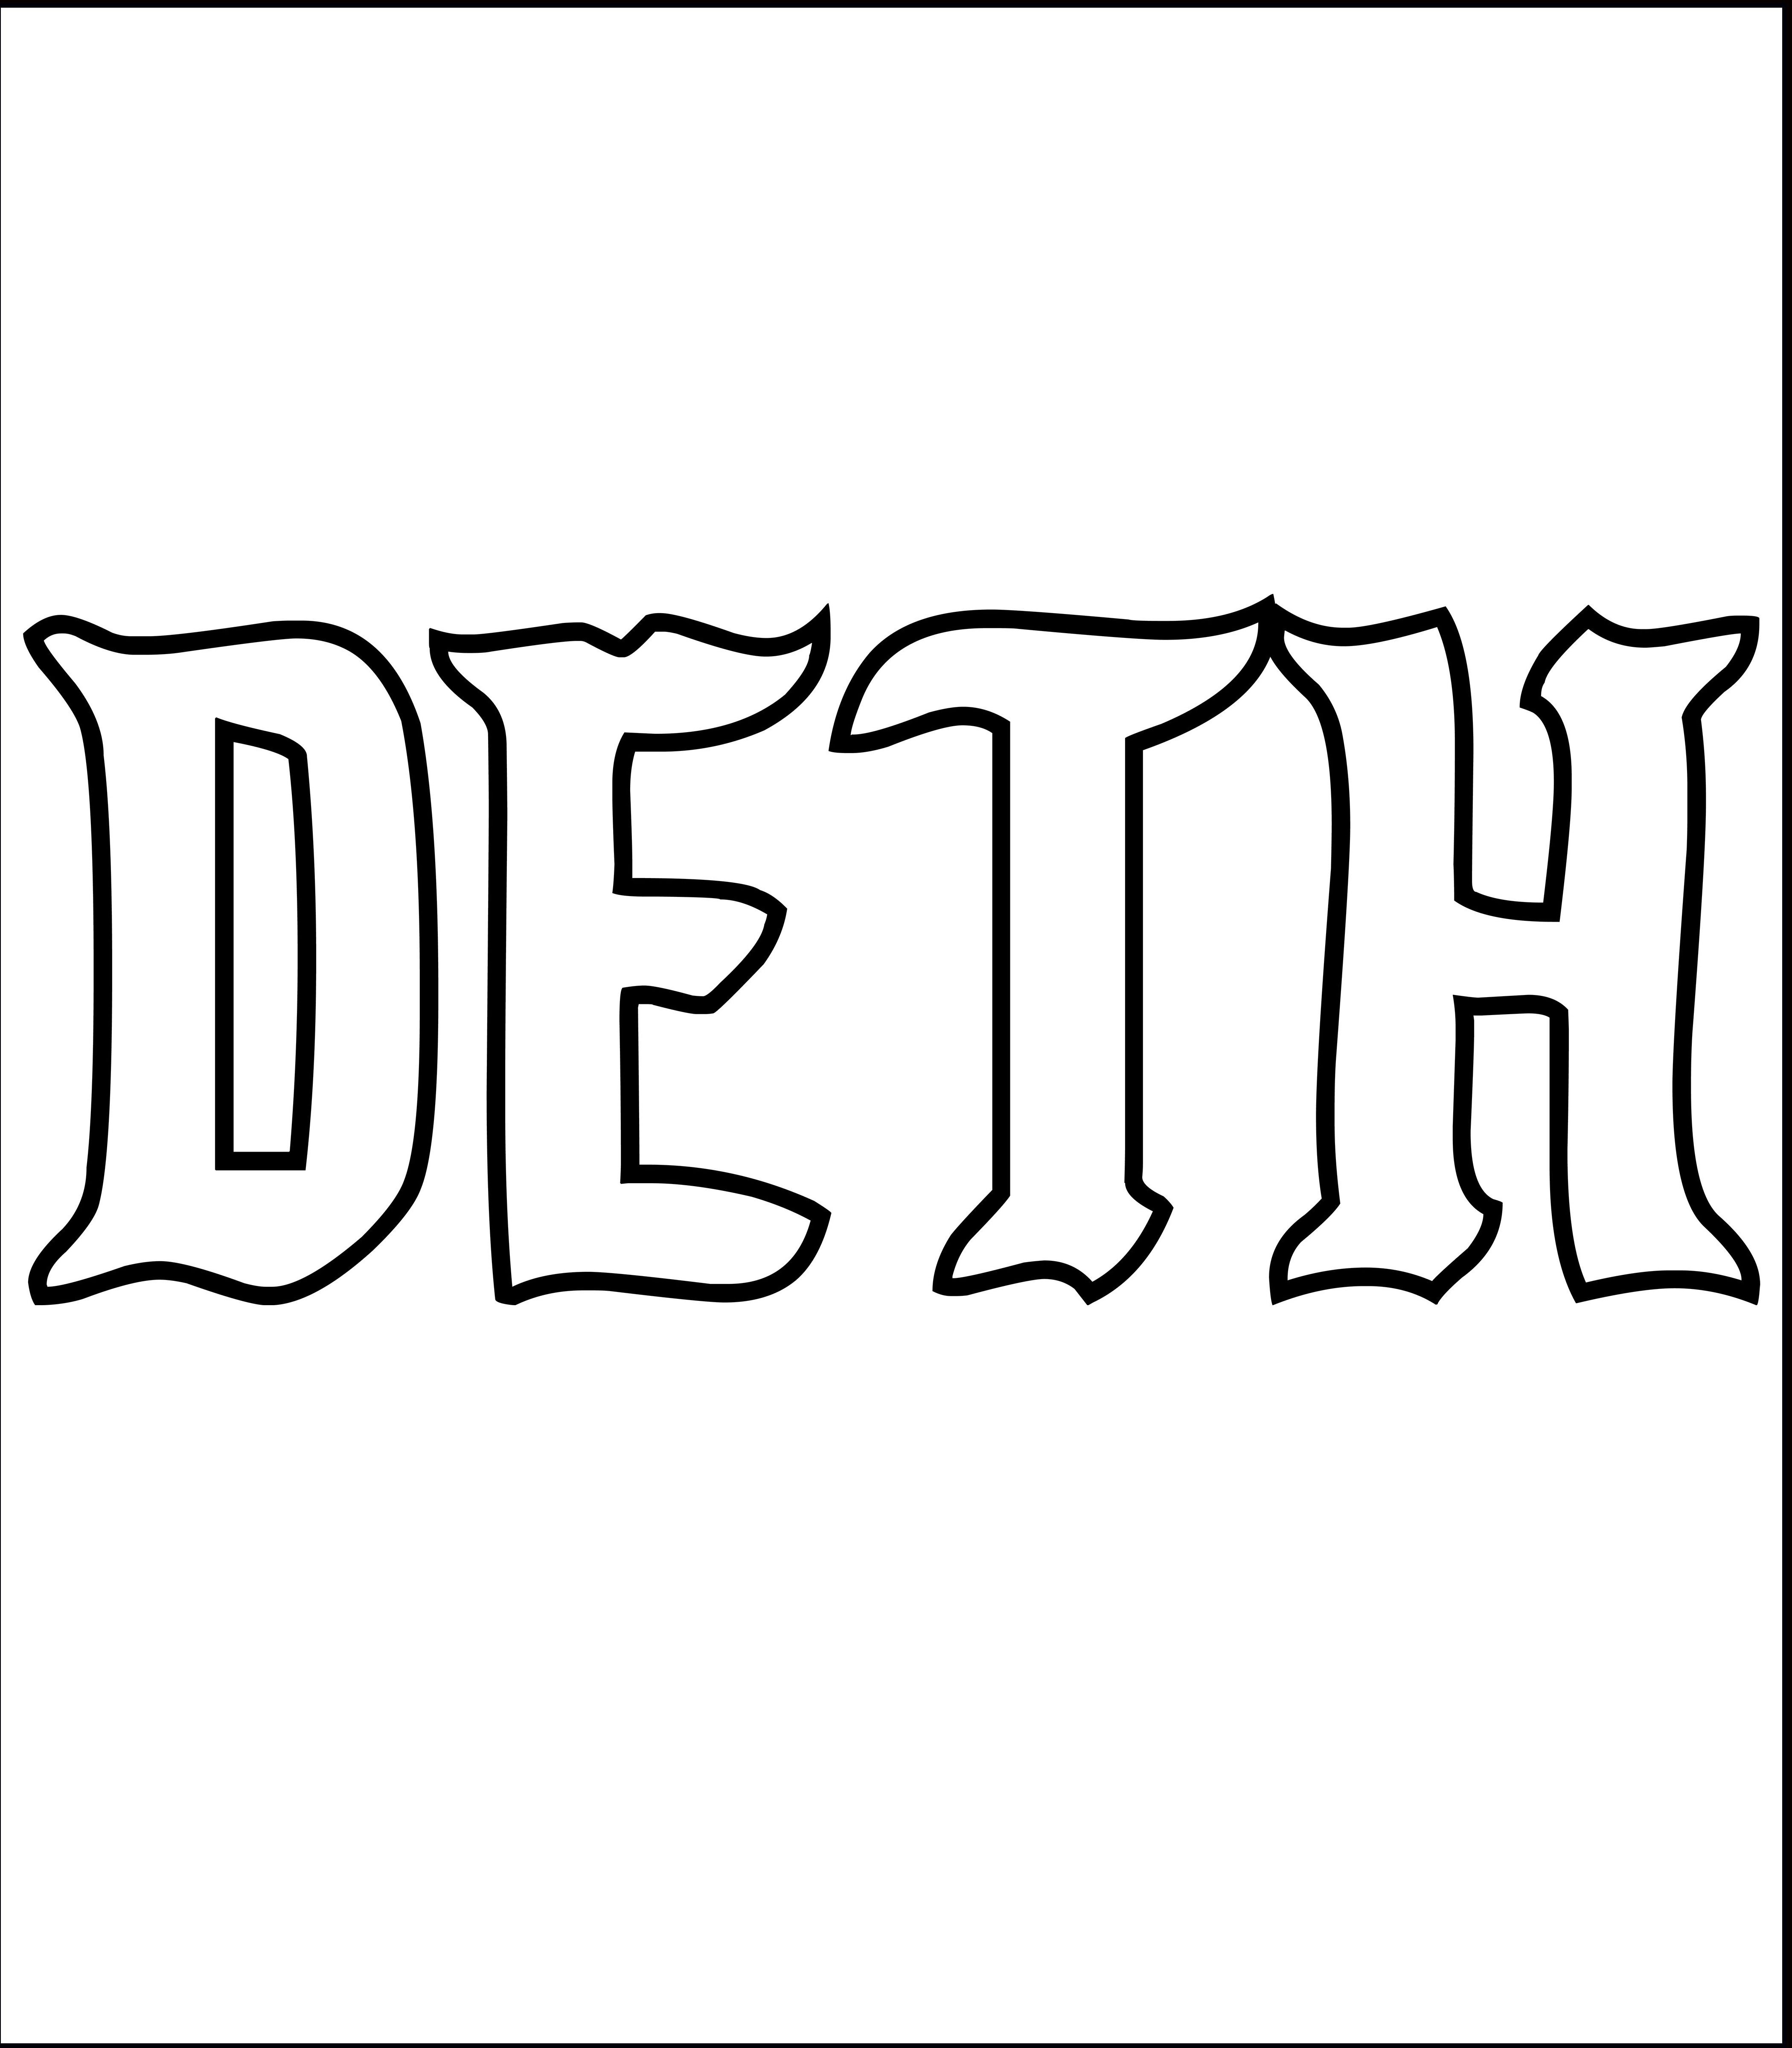 DETH